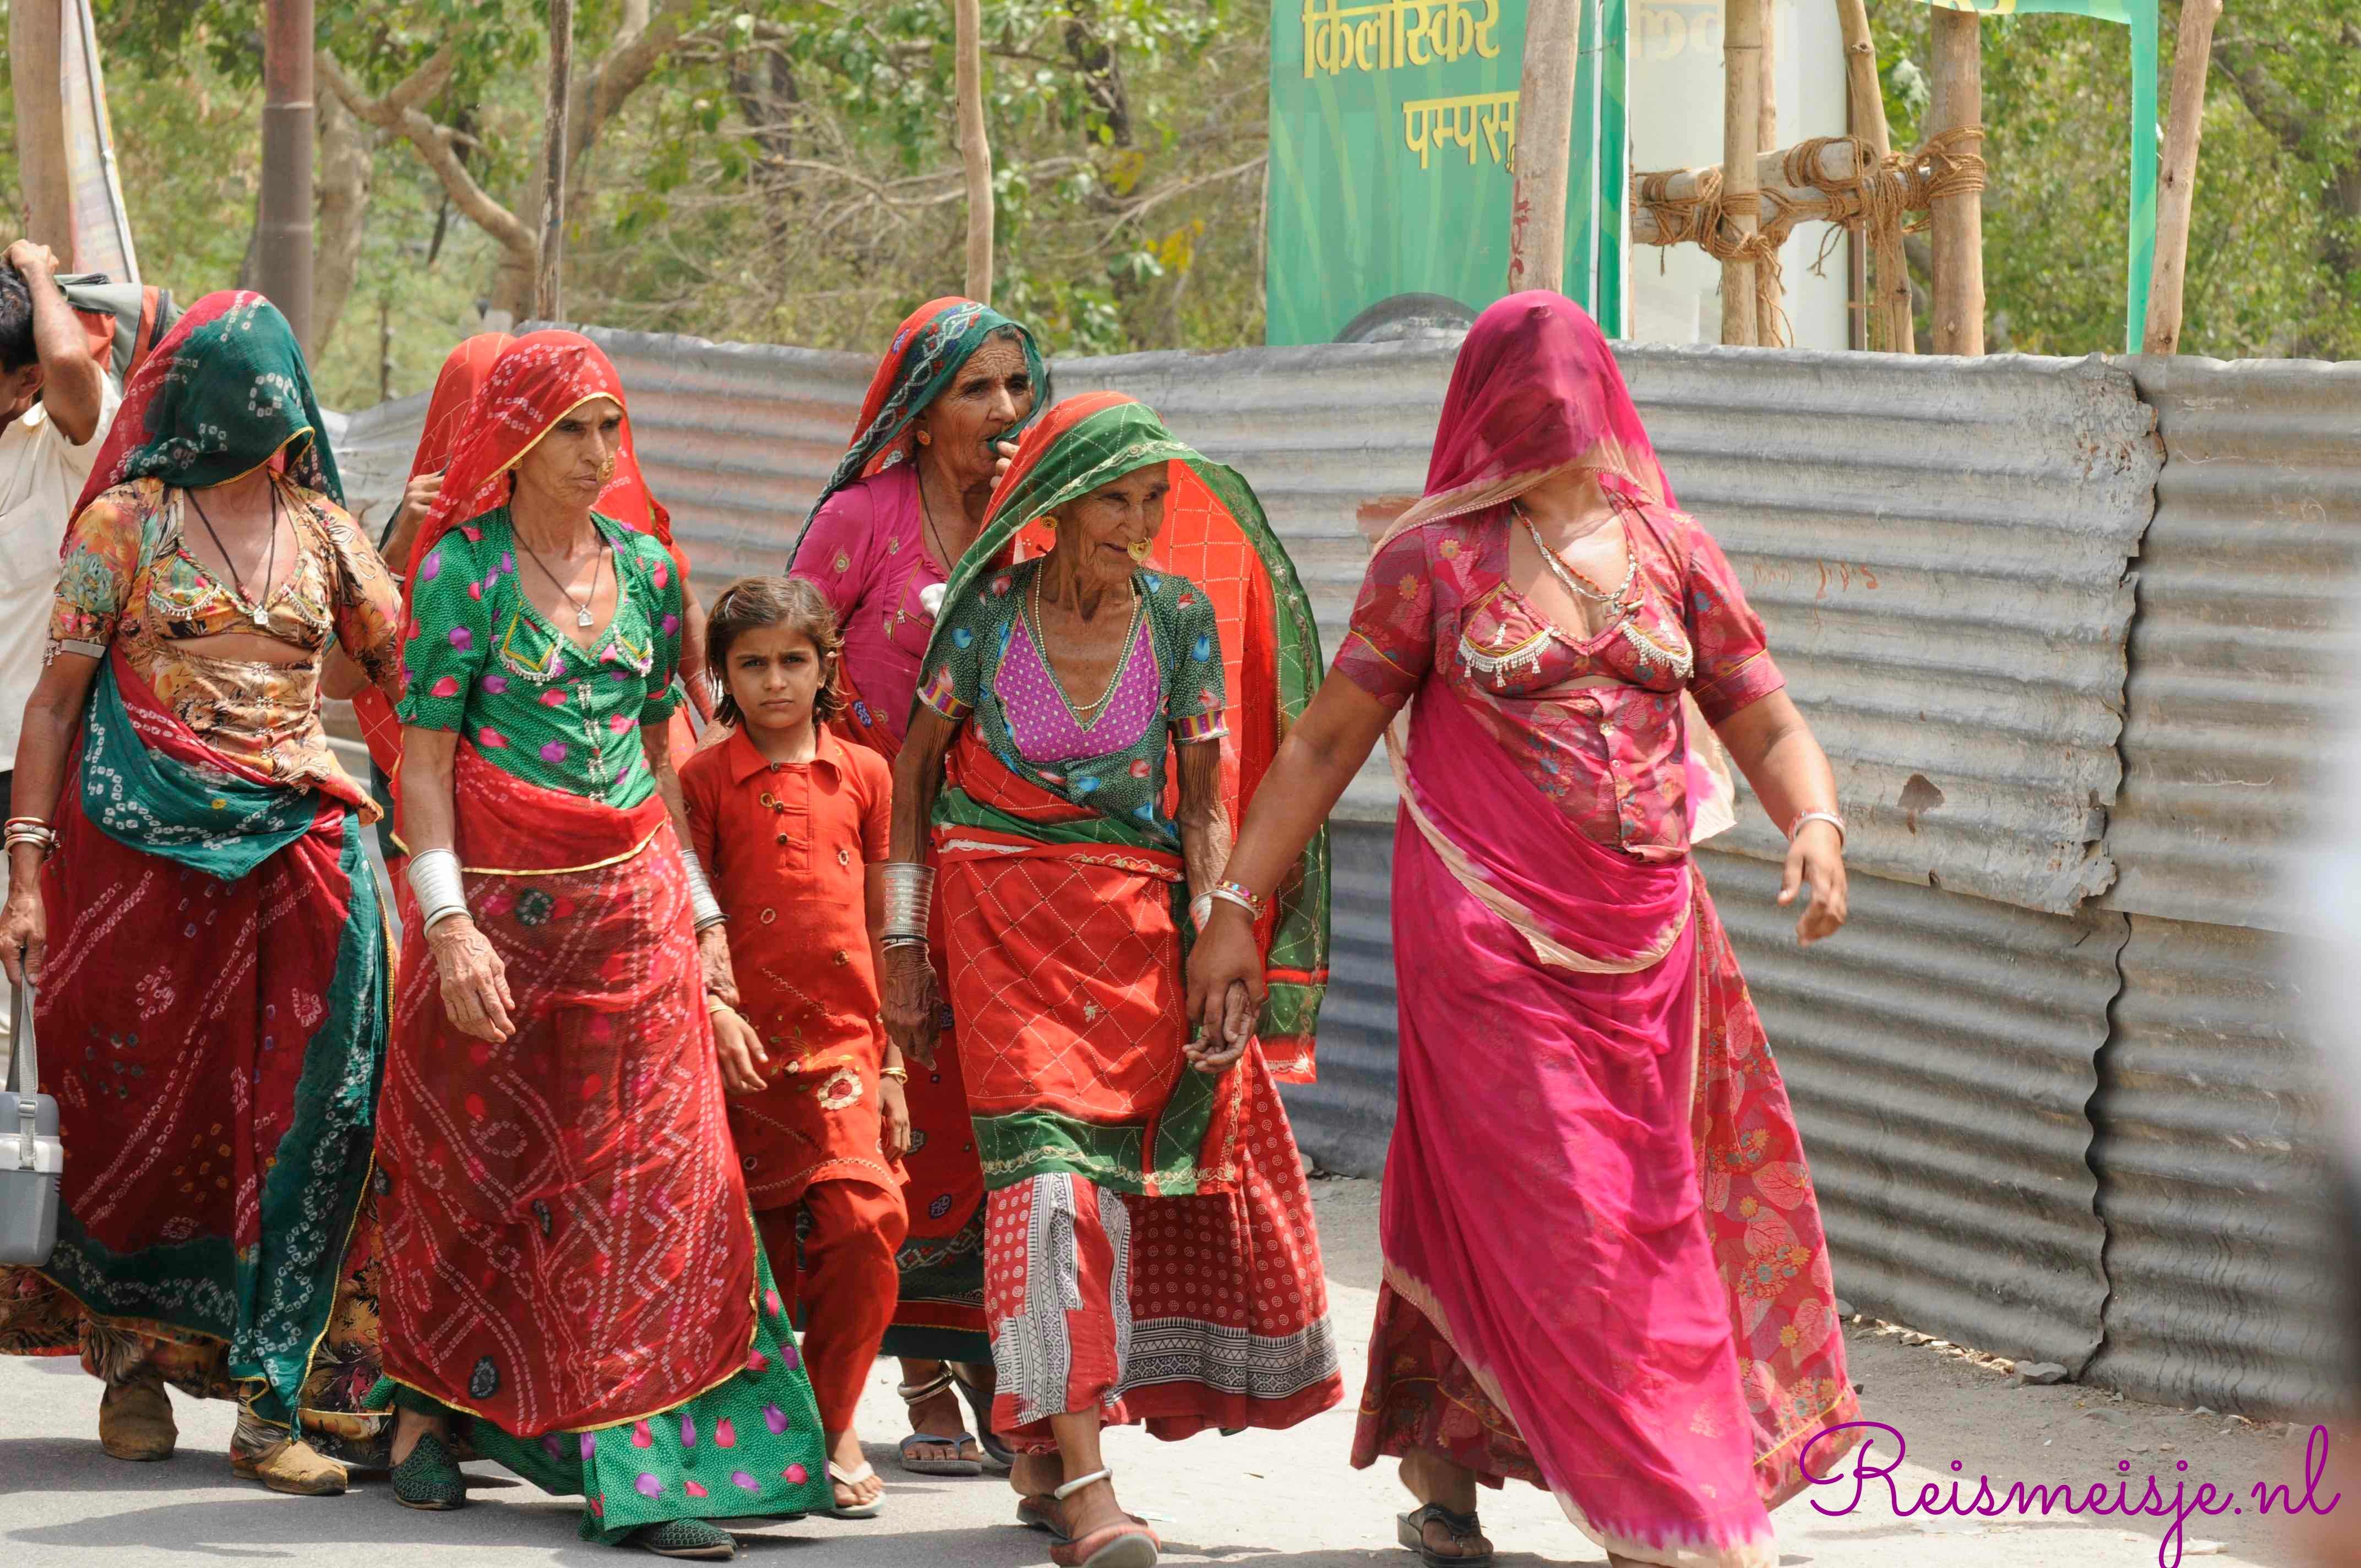 Stroomopwaarts Kom langs om het te weten hongersnood Tips om als vrouw alleen door India te reizen » Reismeisje